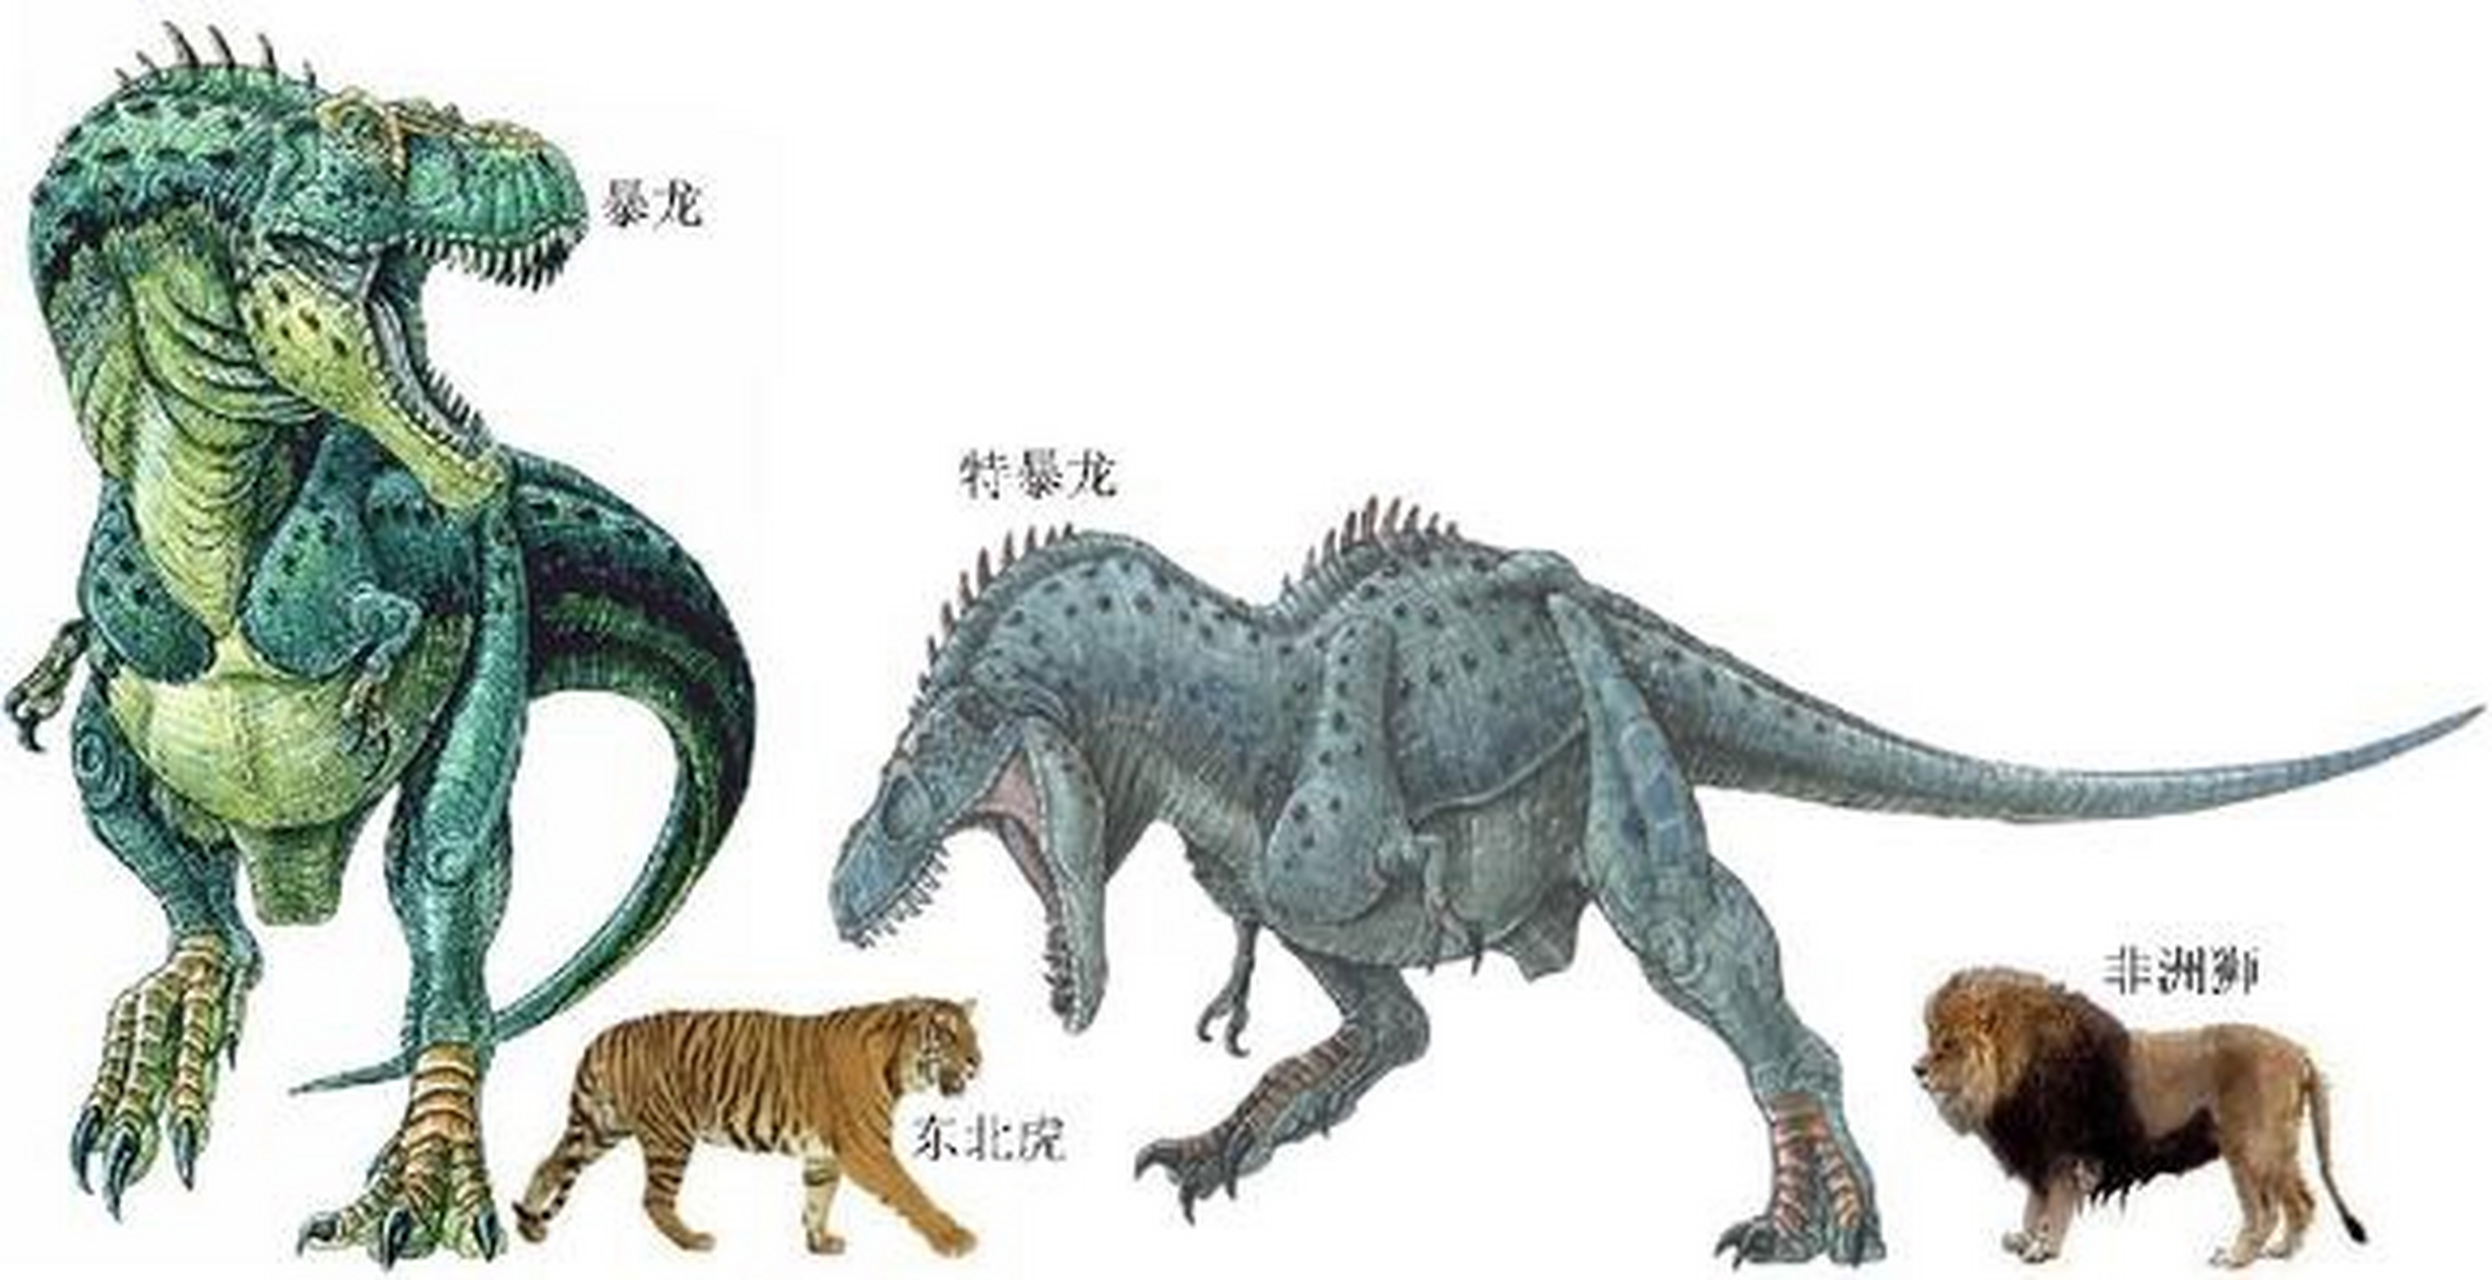 体长约为8-12米,是种大型肉食恐龙.其模式种为勇猛特暴龙.